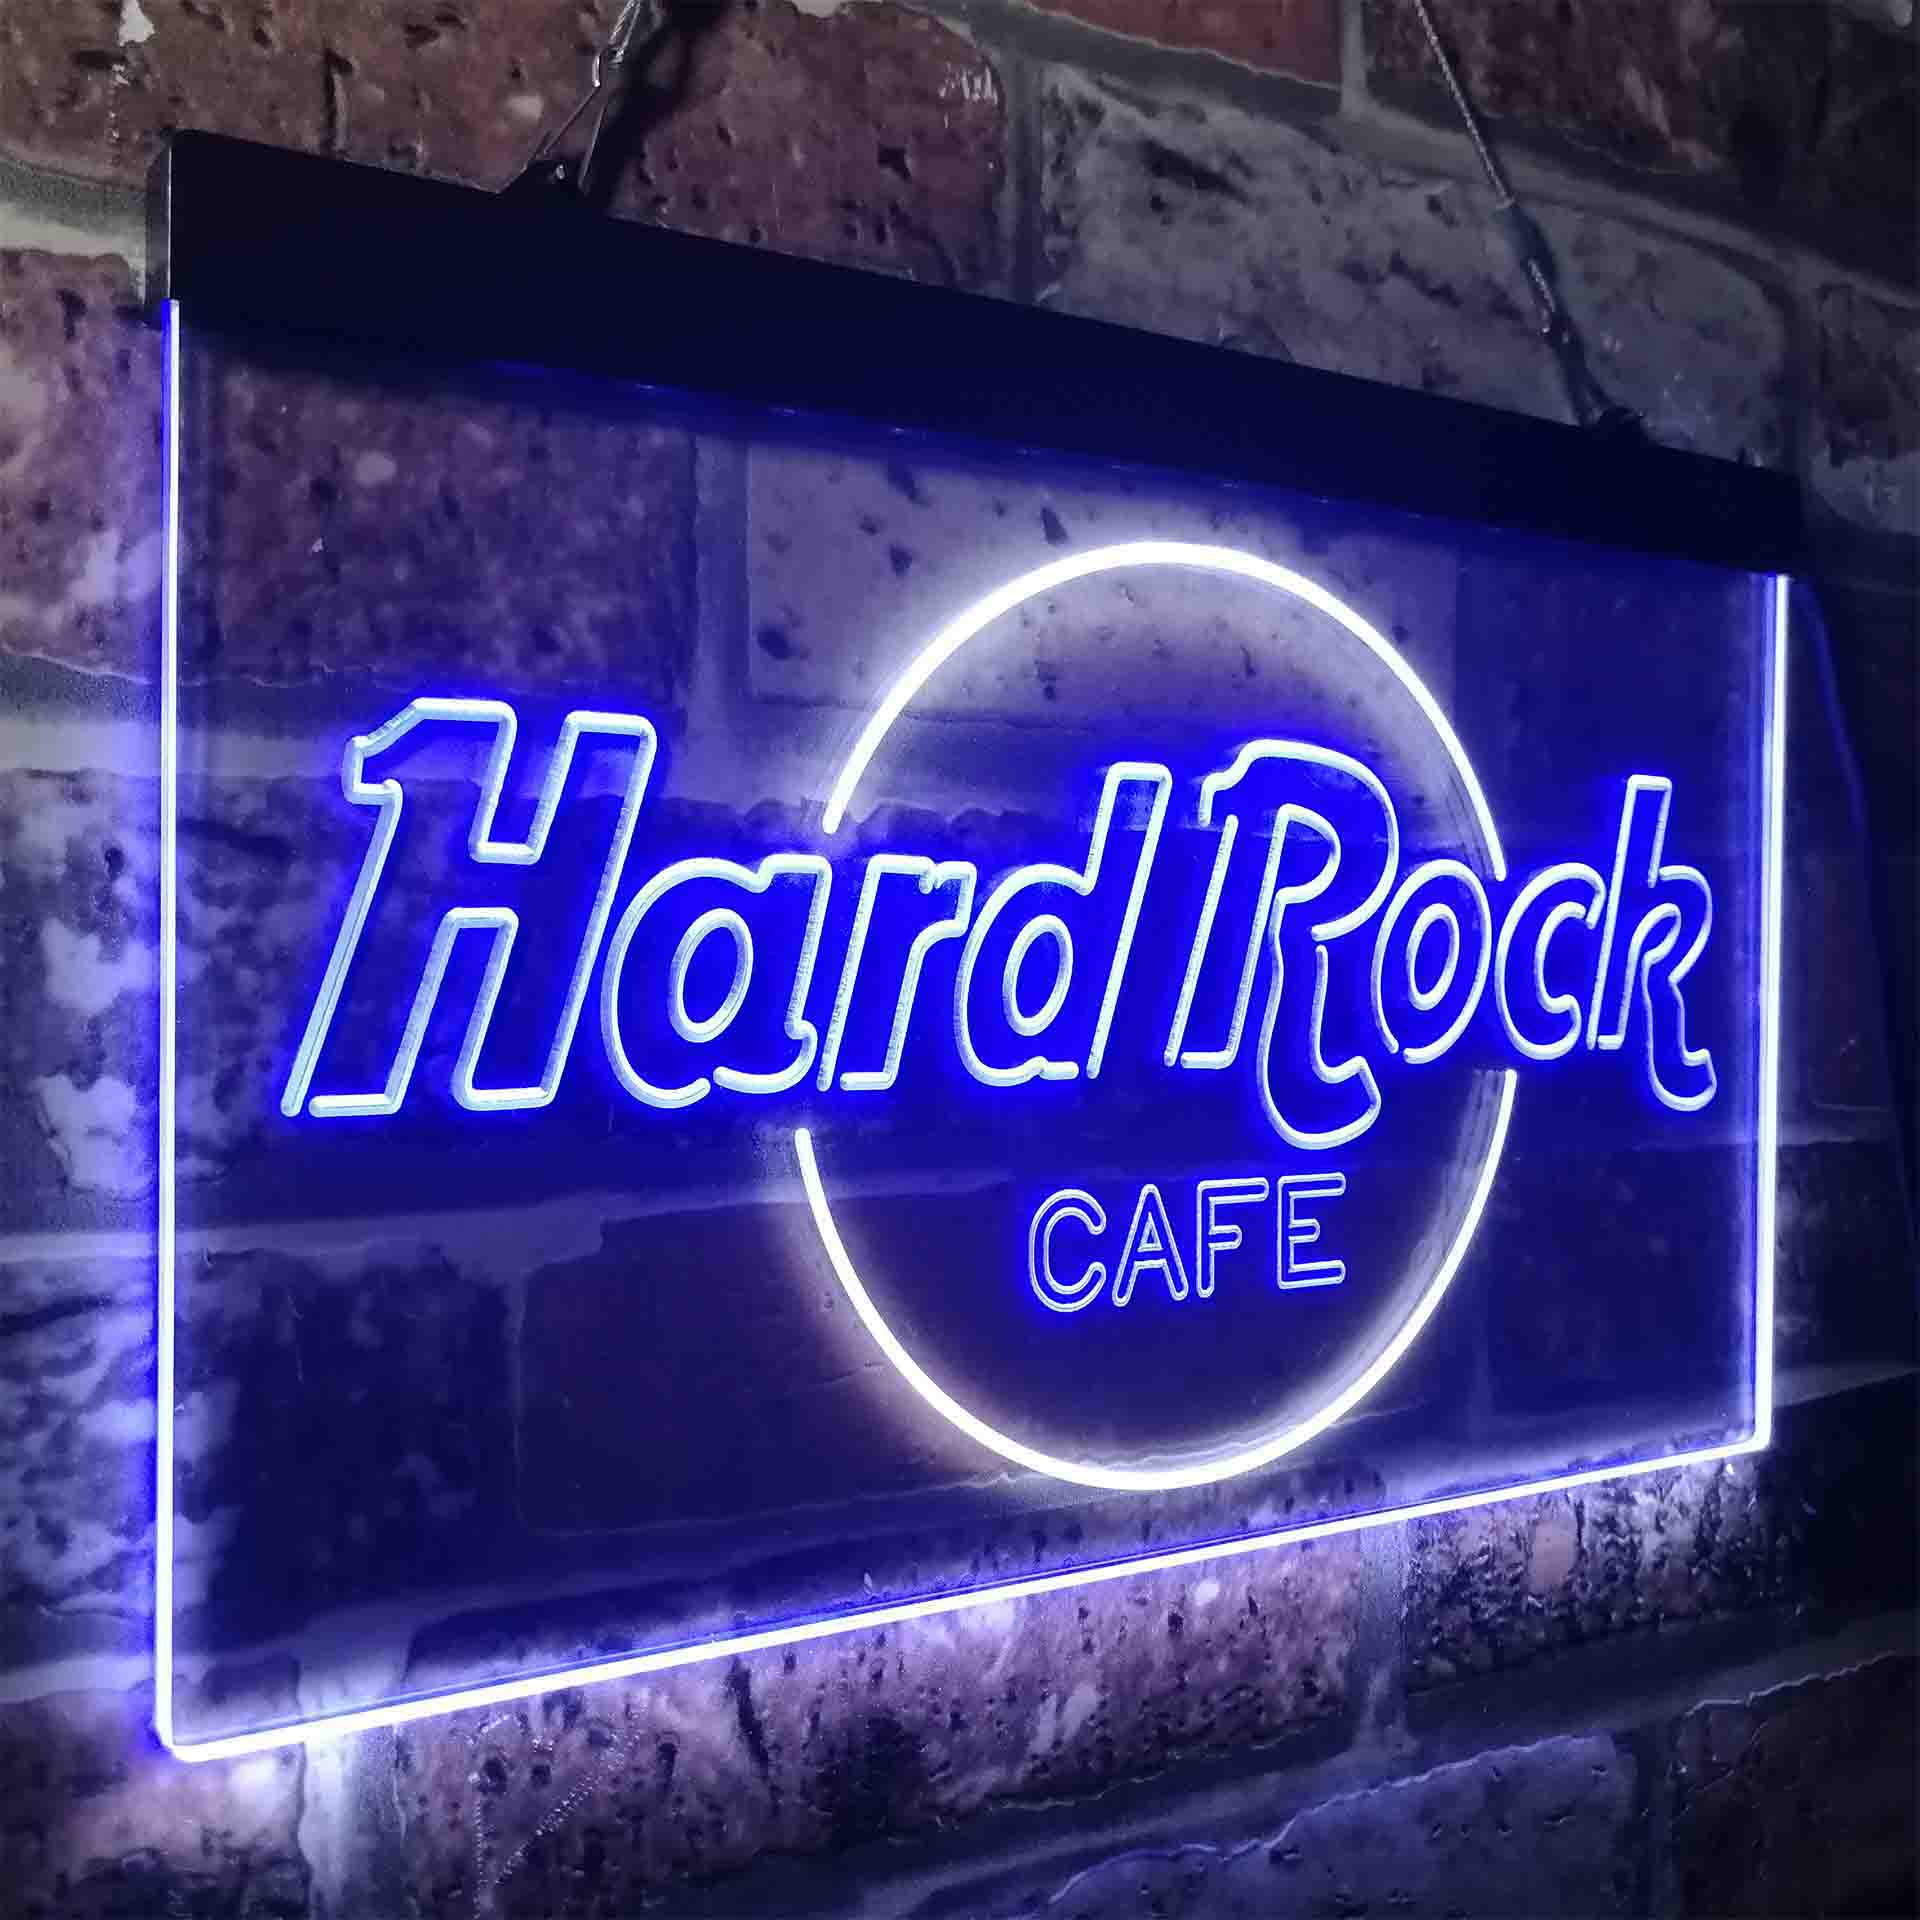 Hard Rock Cafe Restaurant LED Neon Sign